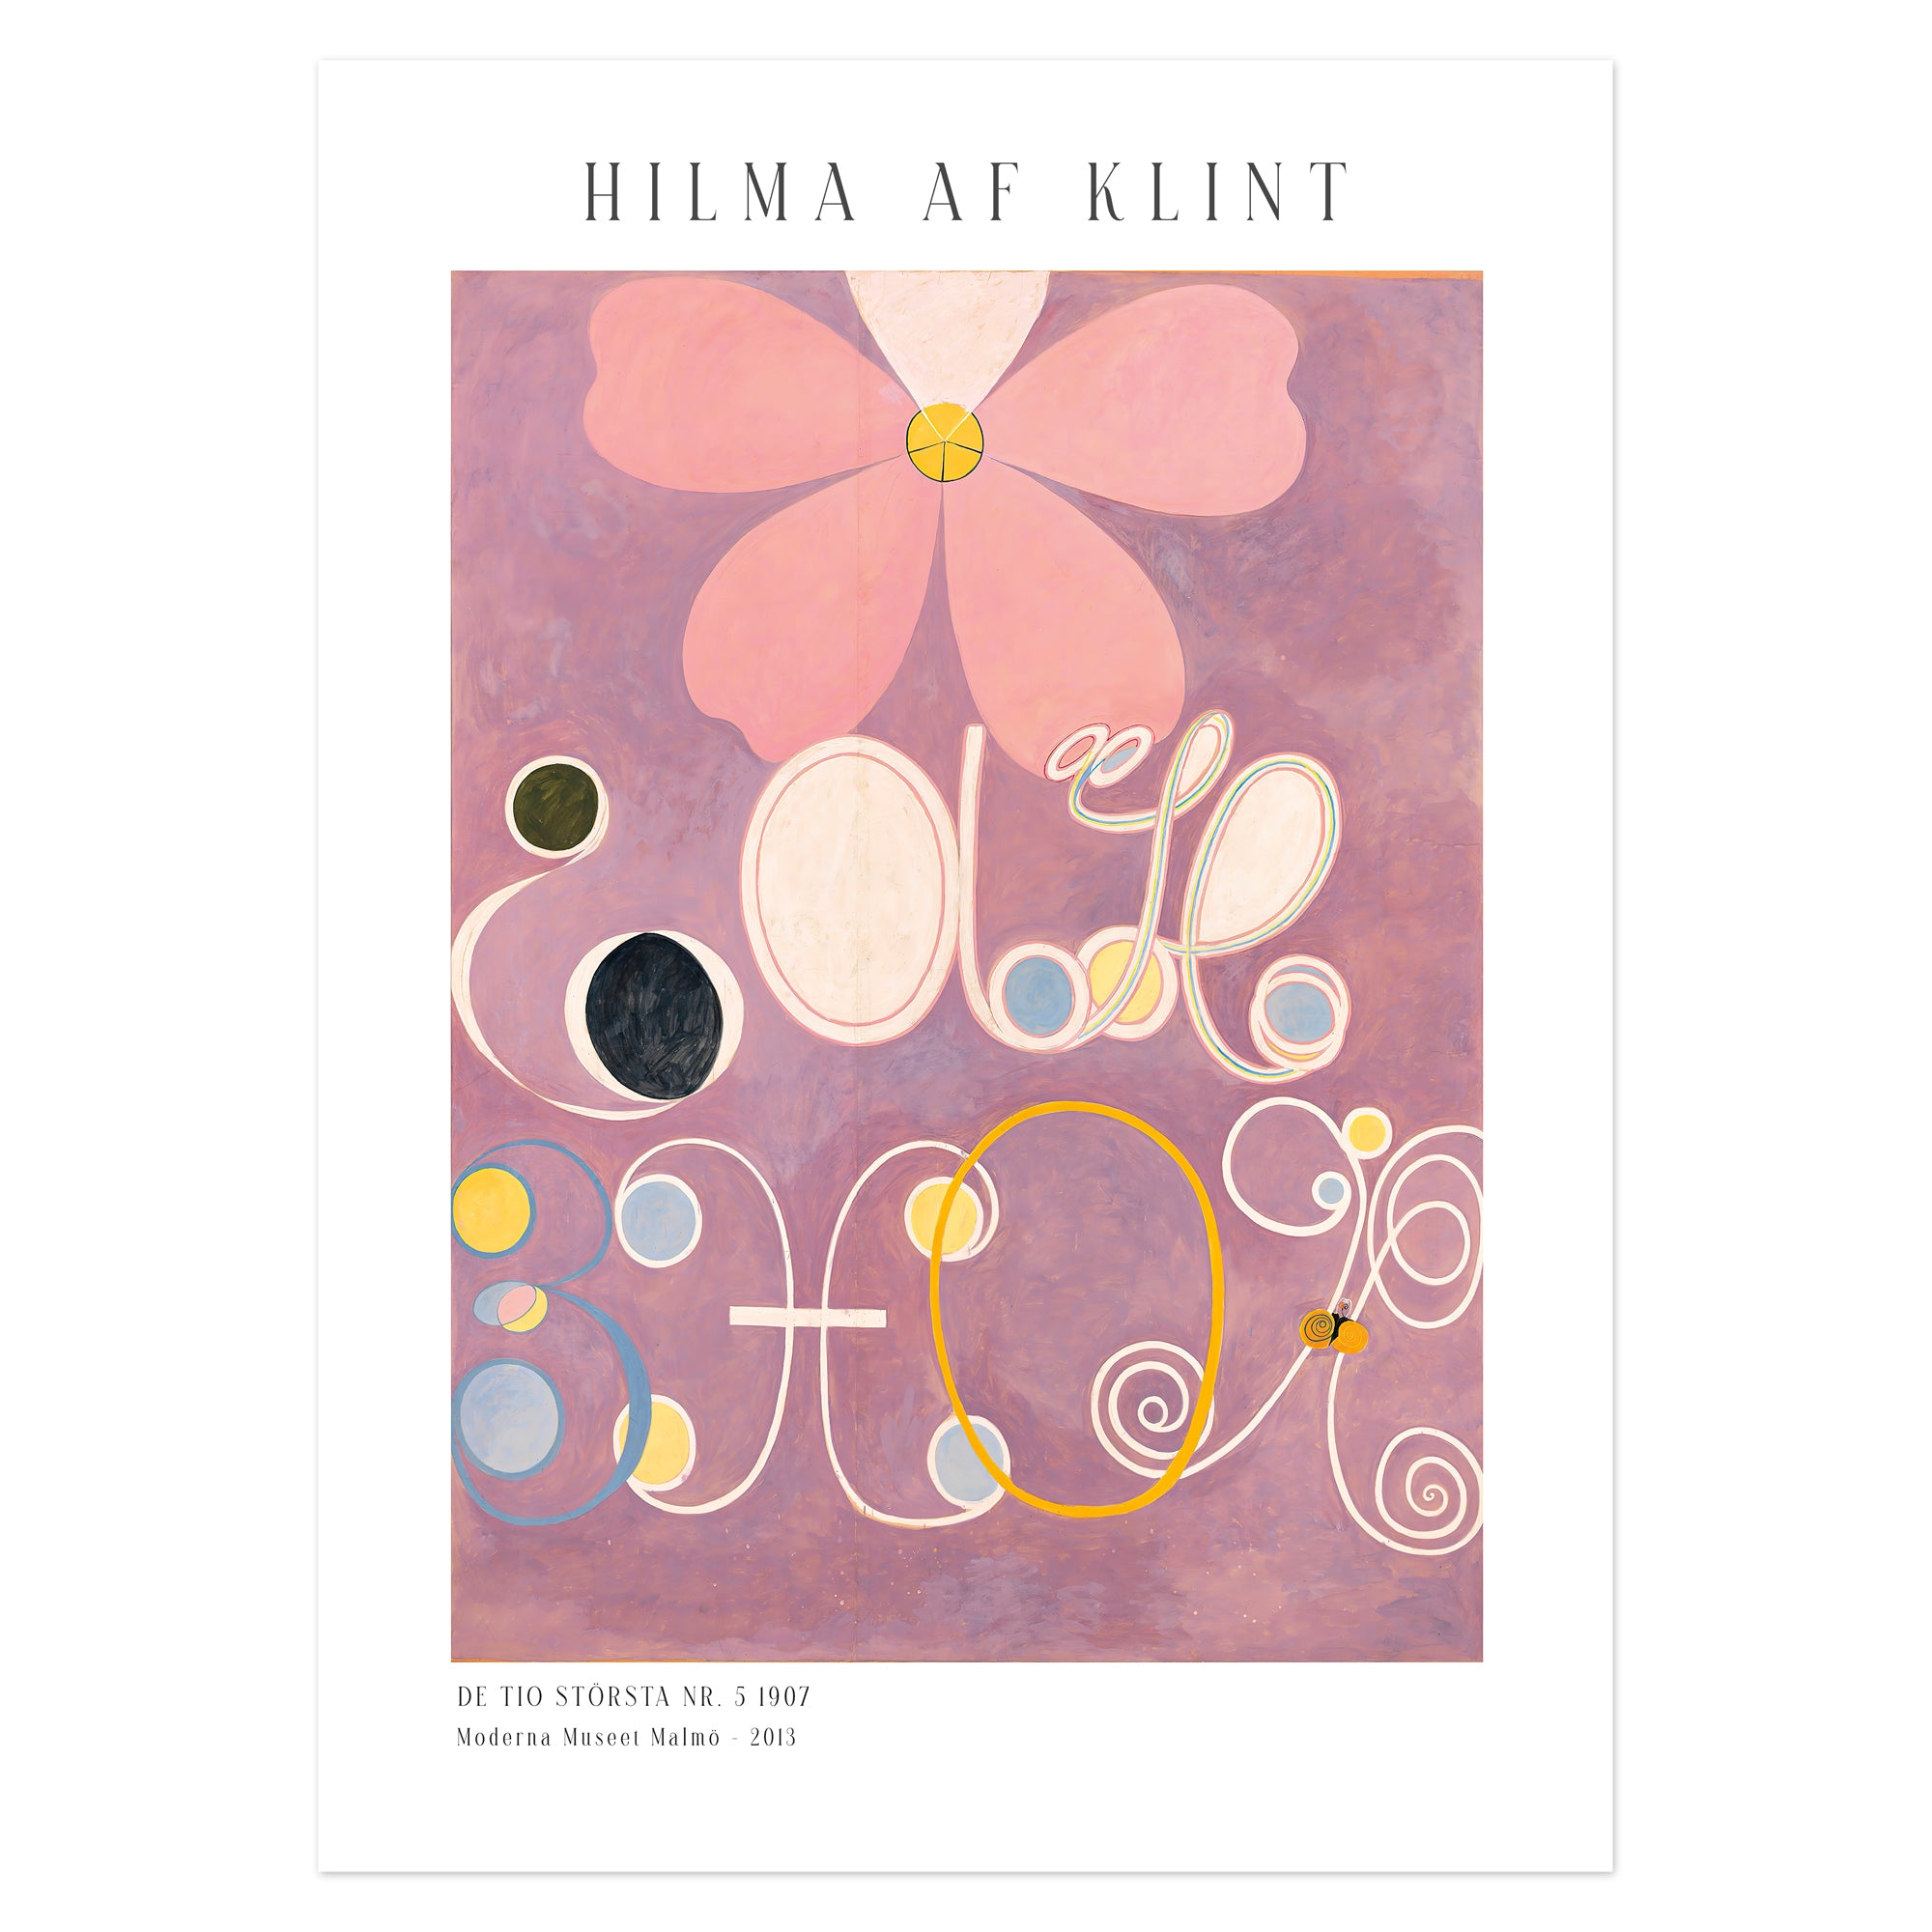 Hilma af Klint Poster - De tio största nr. 5